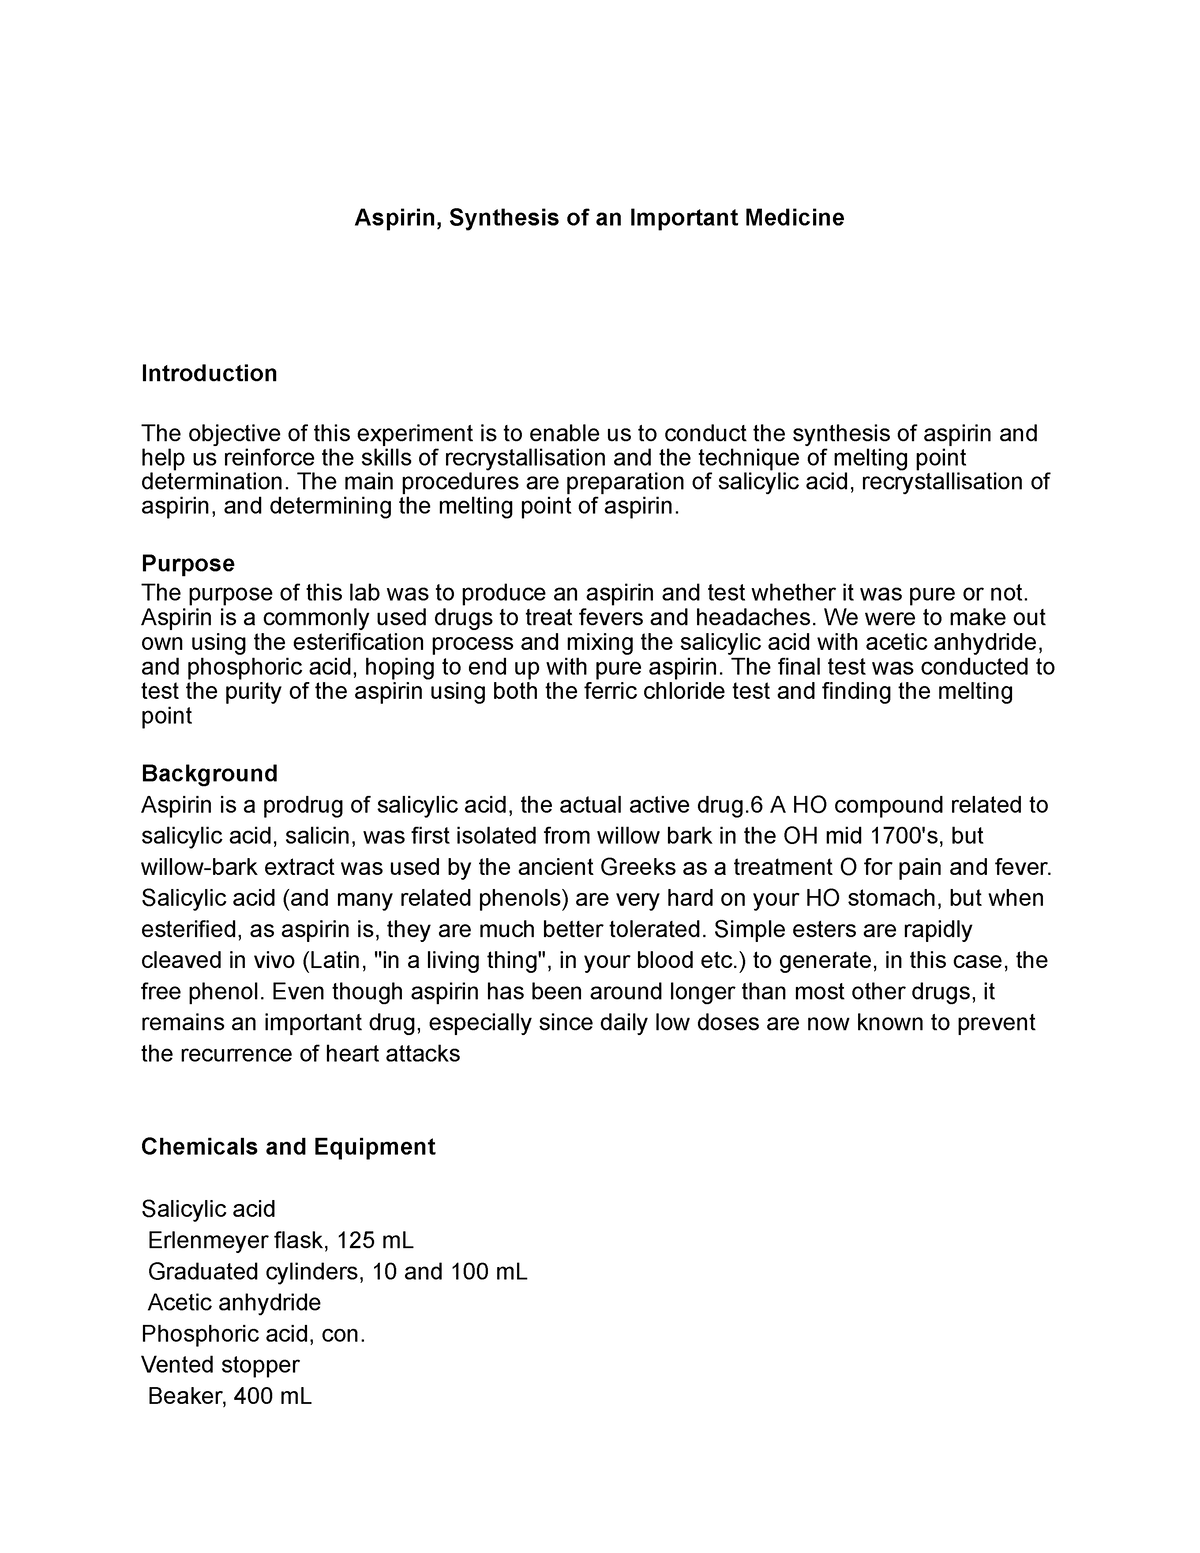 Aspirin, Synthesis of an Important Medicine - Google Docs - Aspirin ...